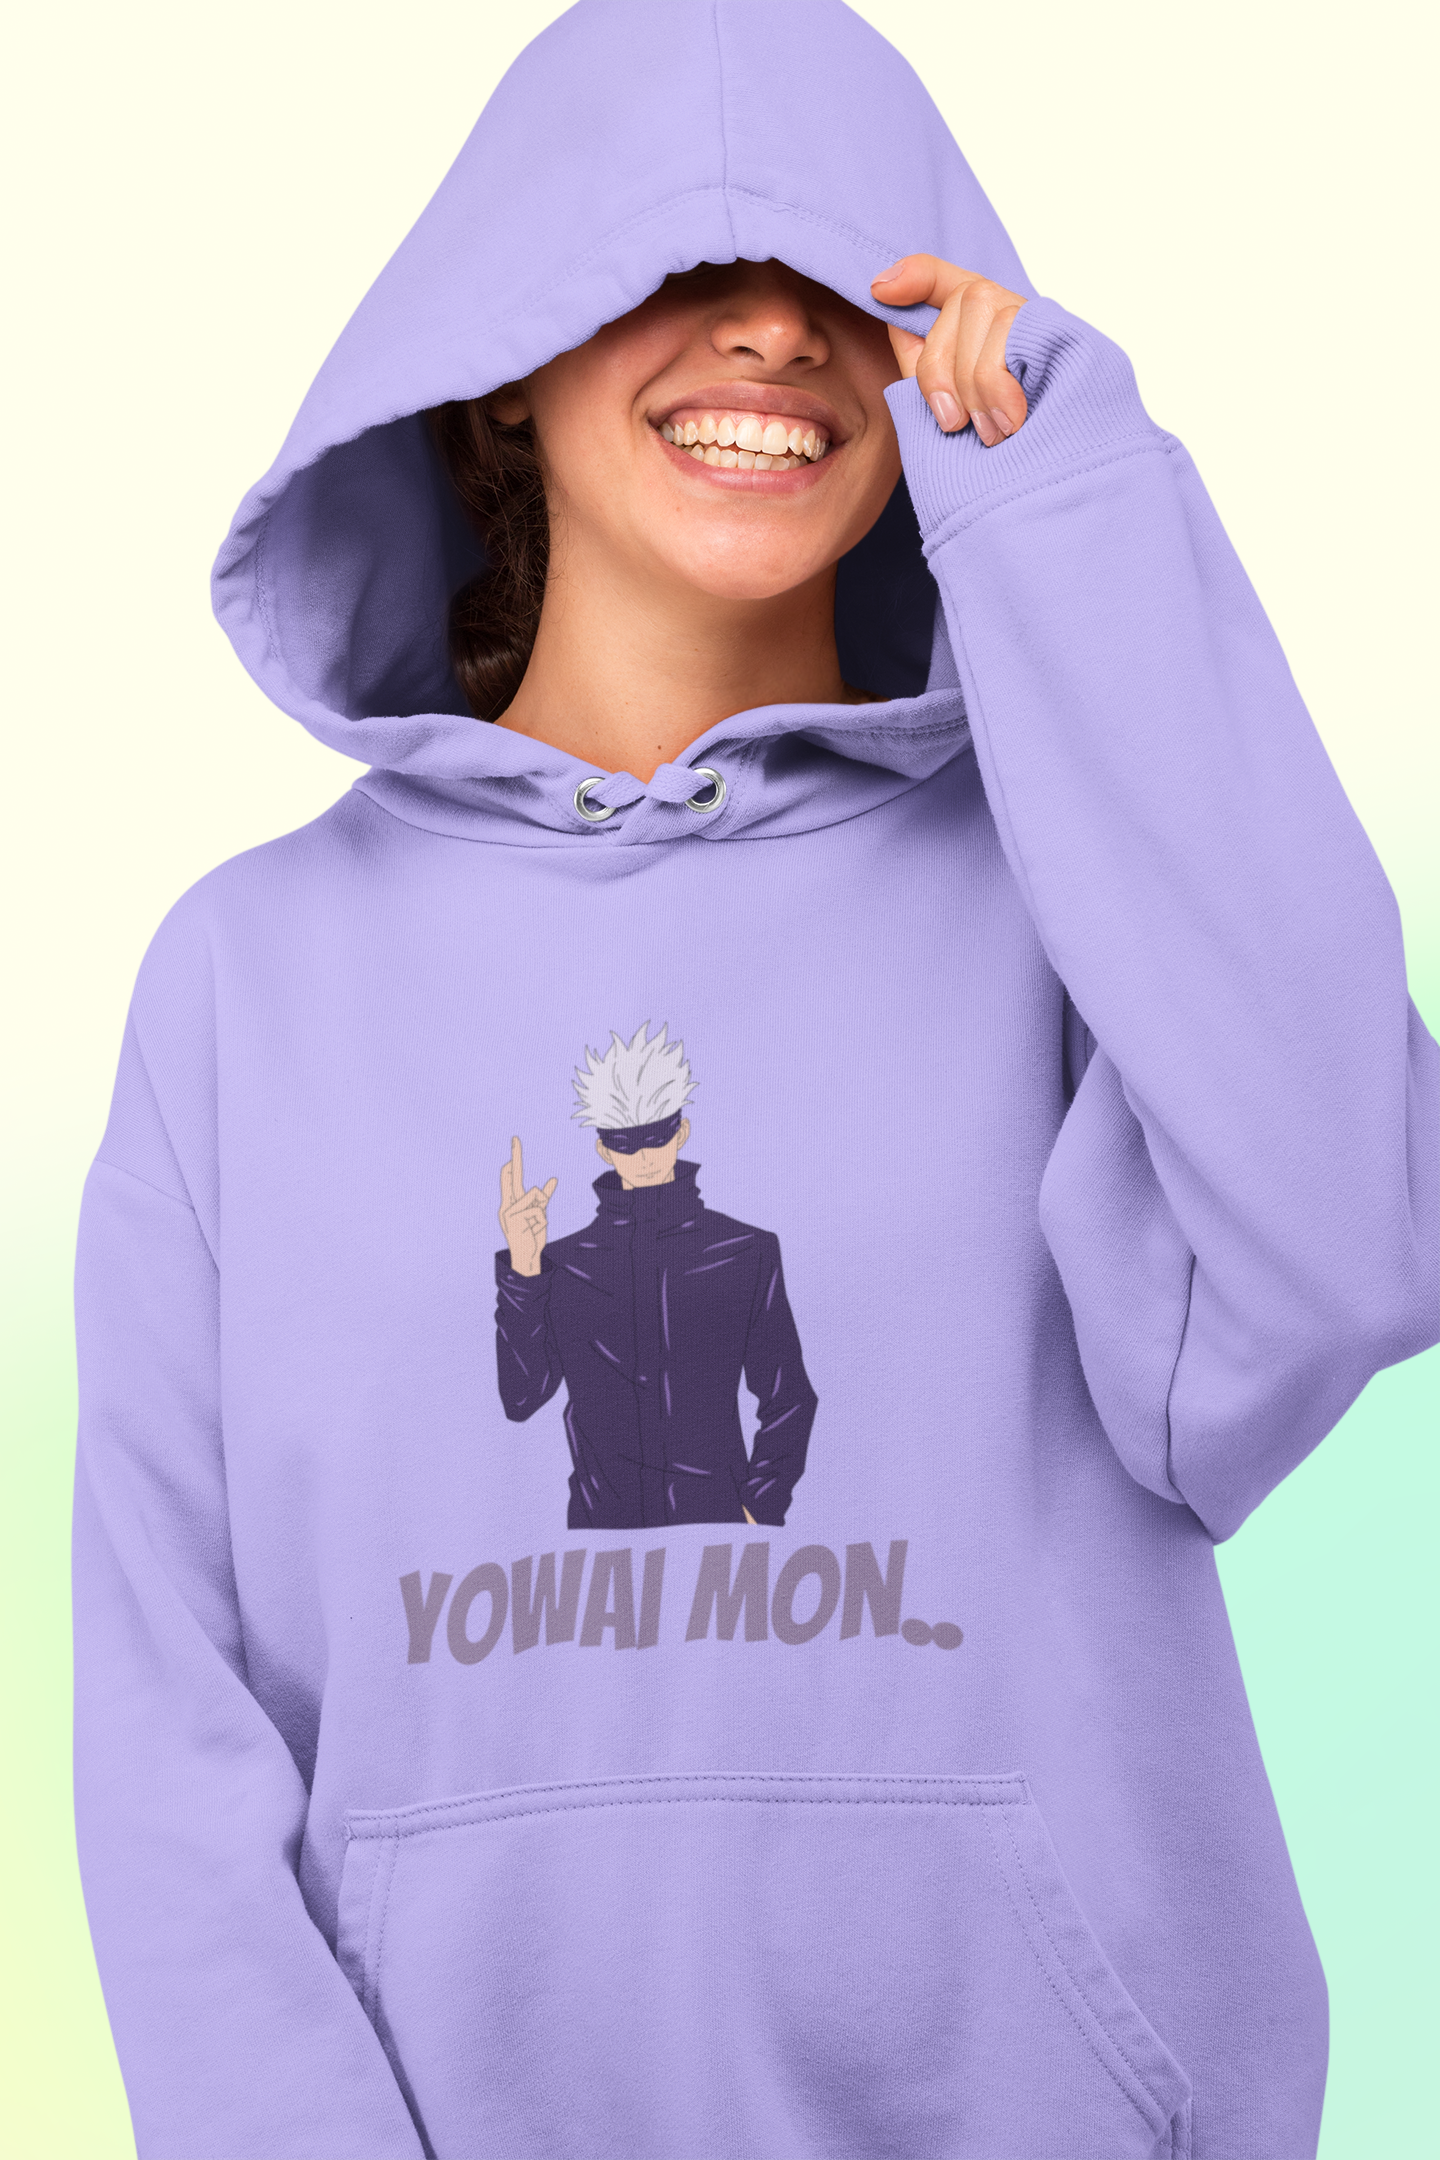 Yowai Mon | Premium Unisex Winter Hoodie